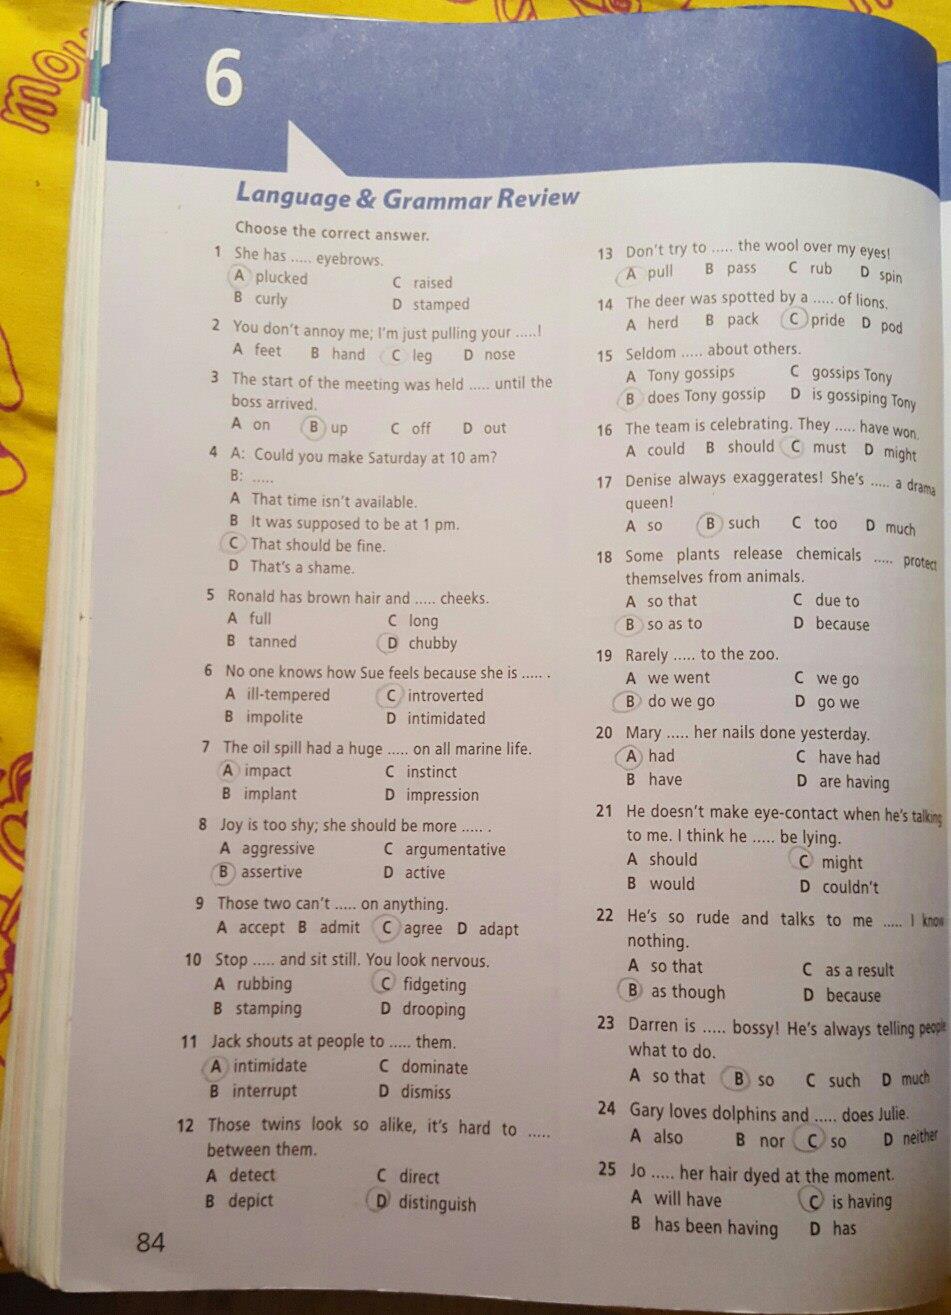 Английский 9 класс starlight workbook